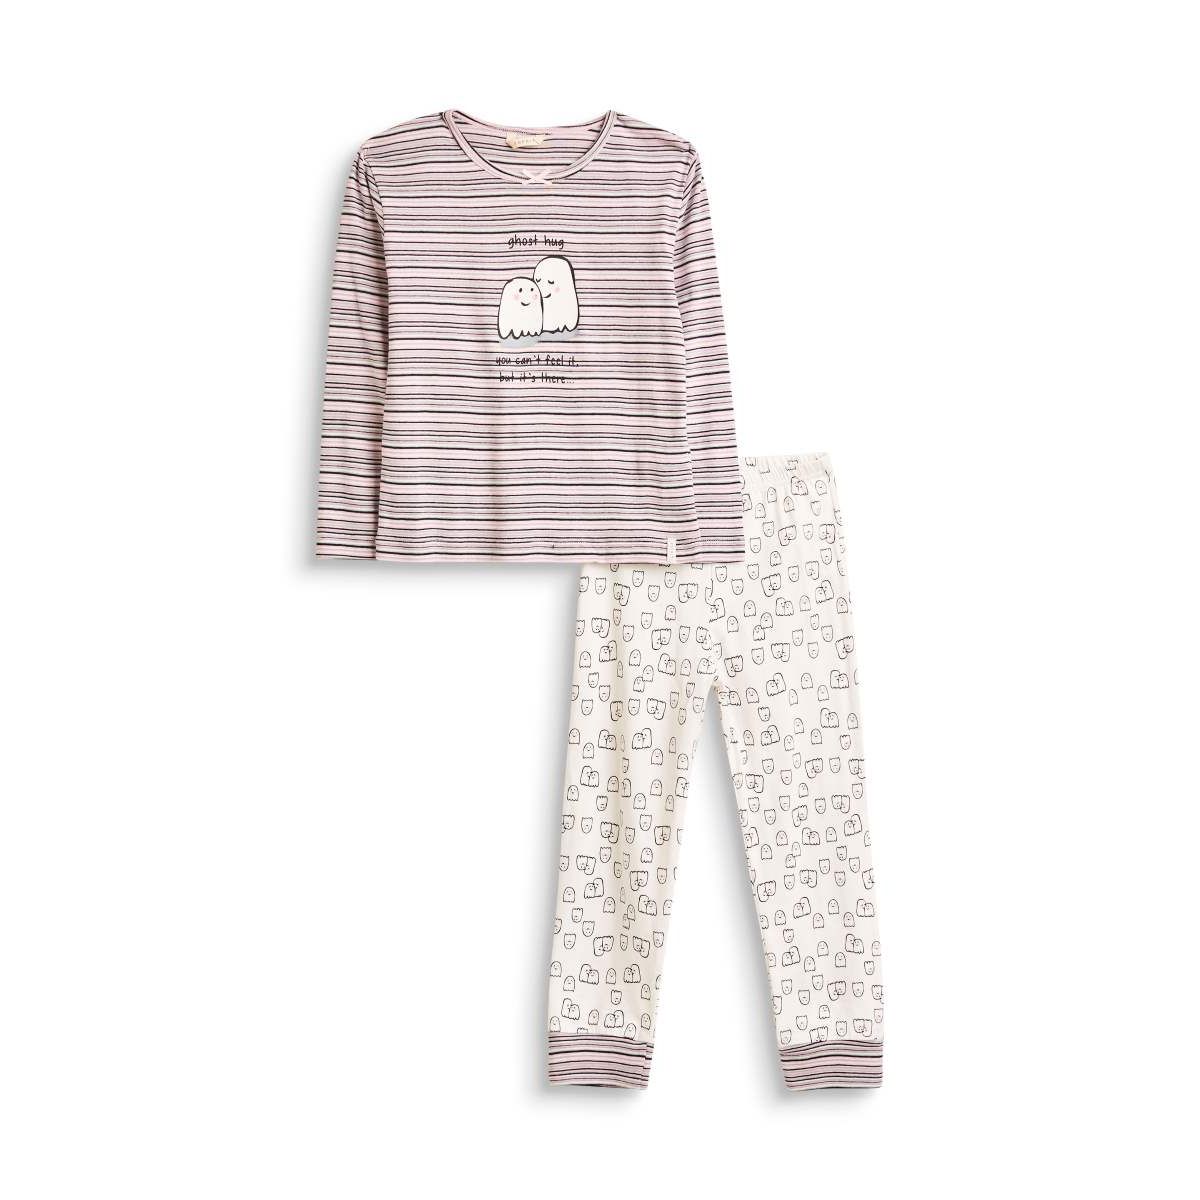 Spooky maar schattige roze vleermuis doodskist grijs thermische pyjama Halloween pyjama voor meisjes Kleding Meisjeskleding Pyjamas & Badjassen Pyjama Sets thermische pyjama's 